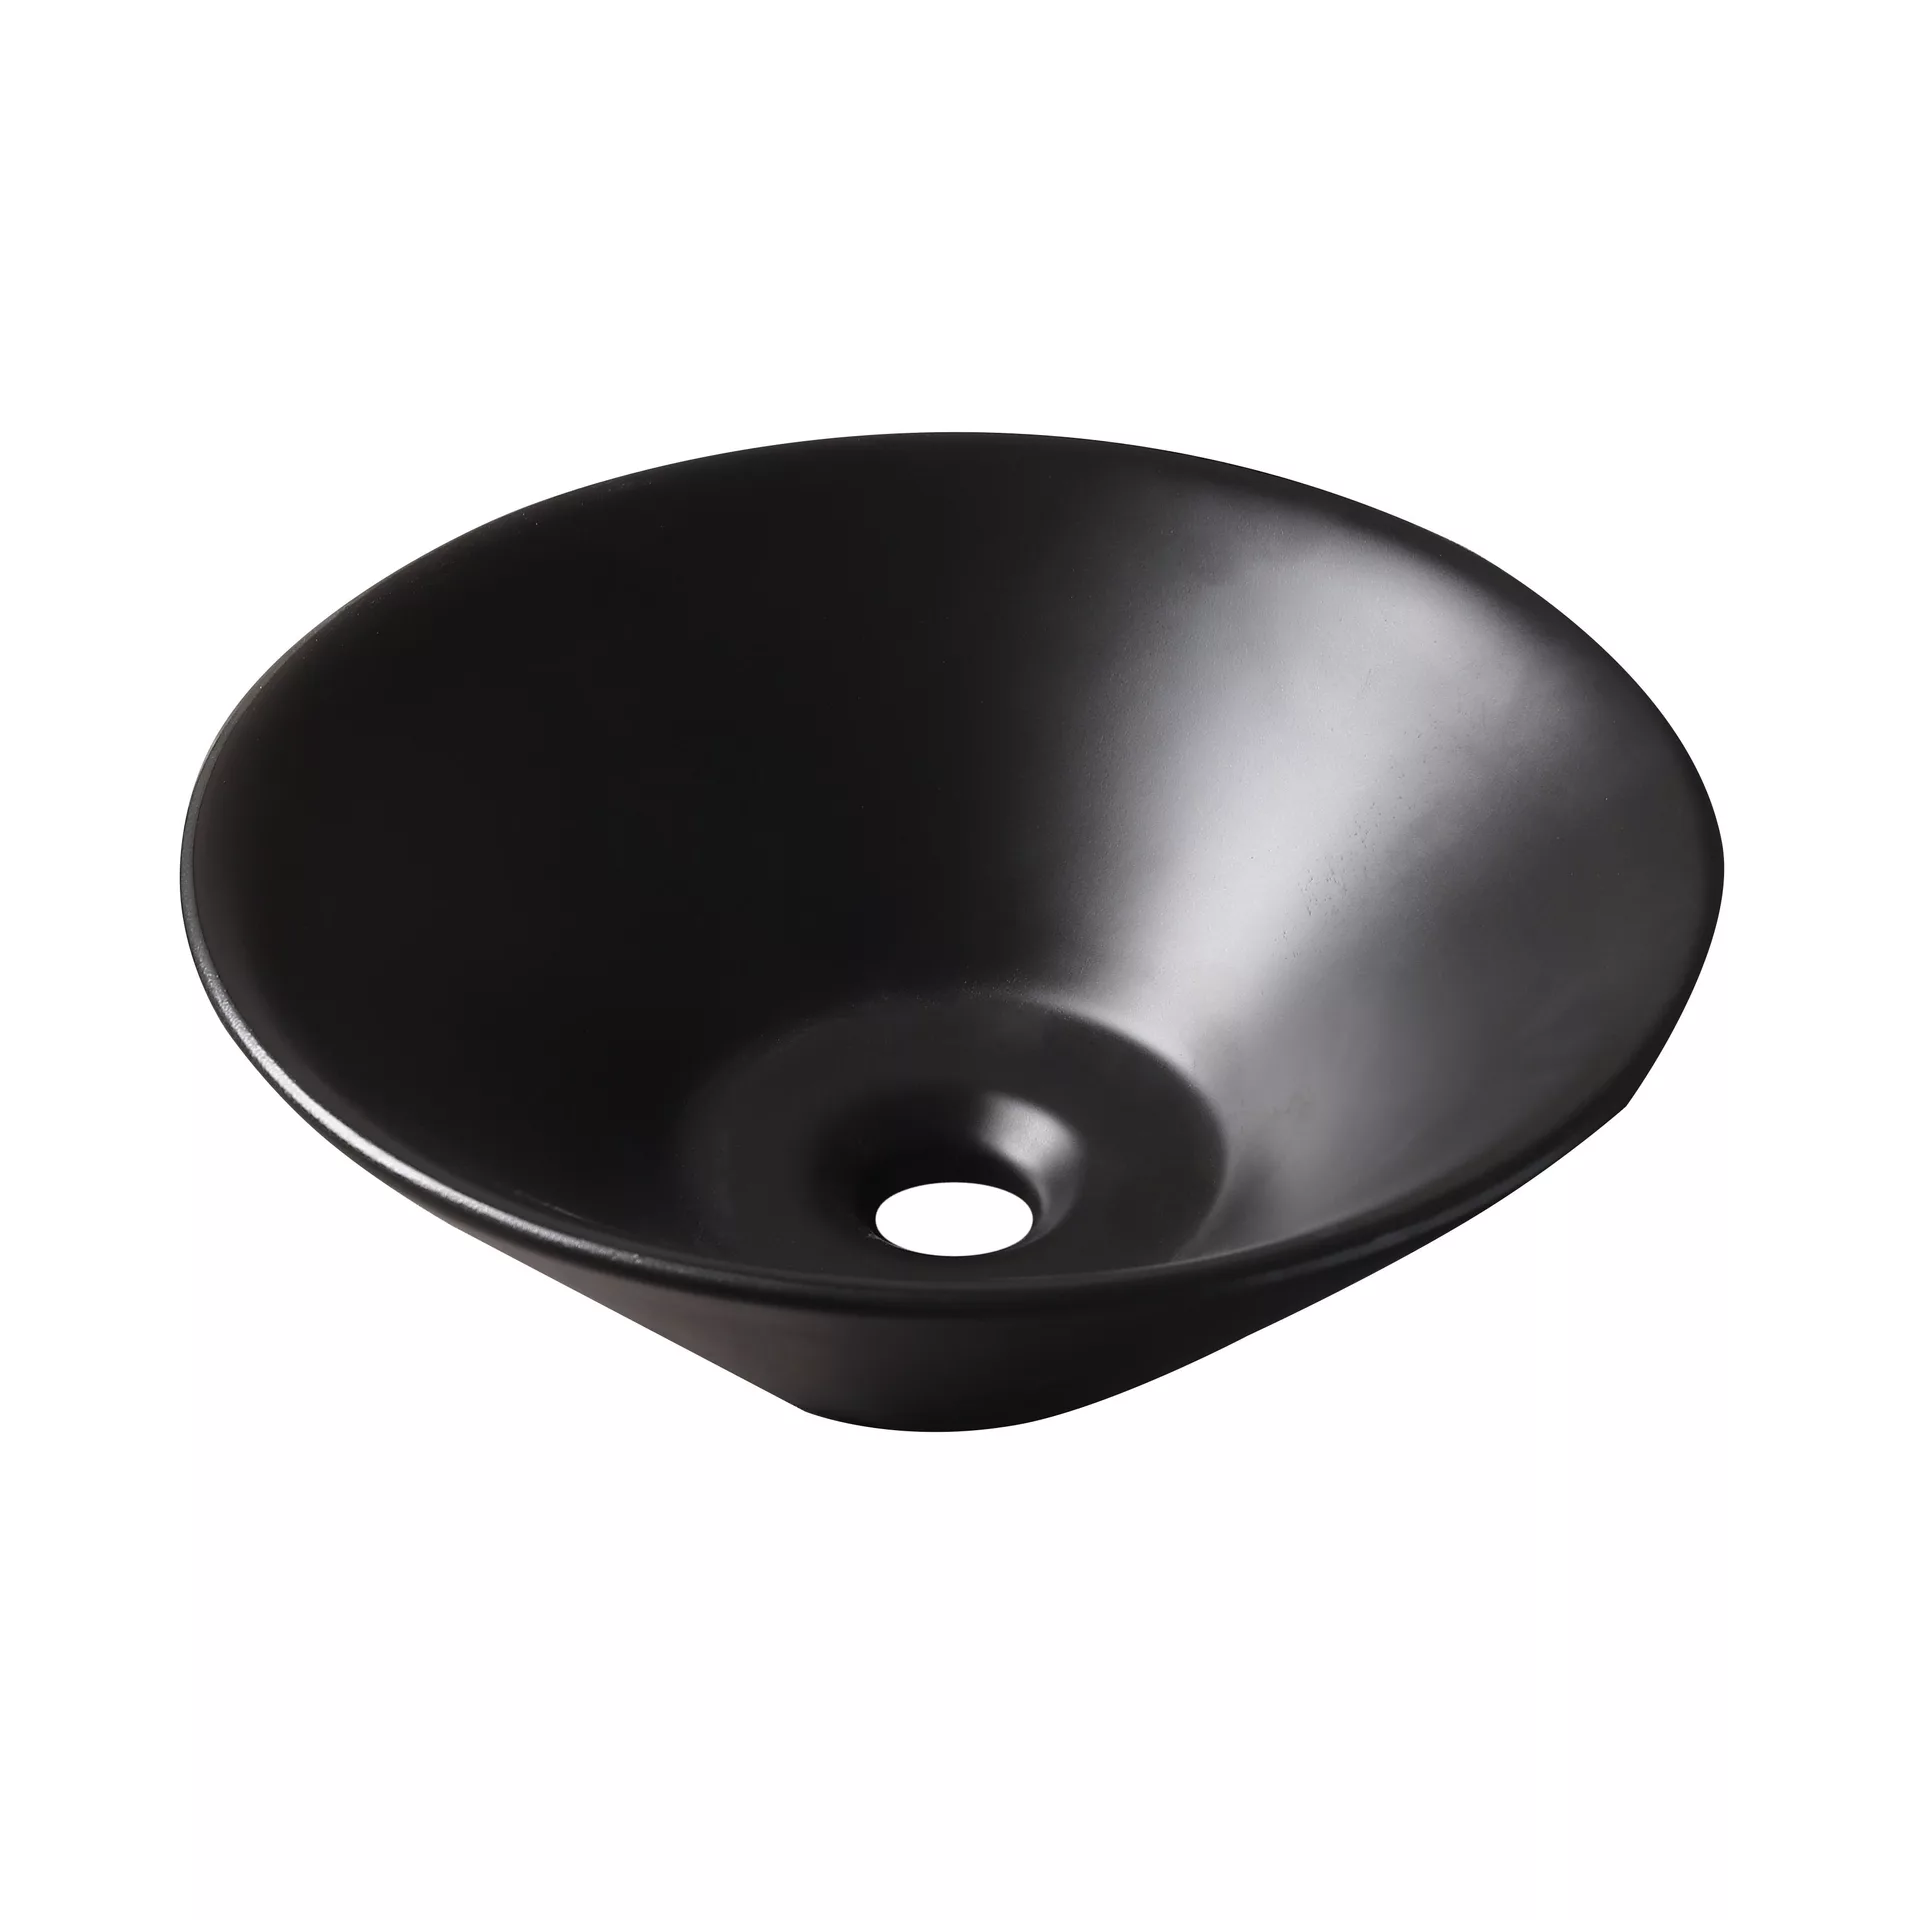 Накладная раковина для ванной GiD N9102bg черная керамическая